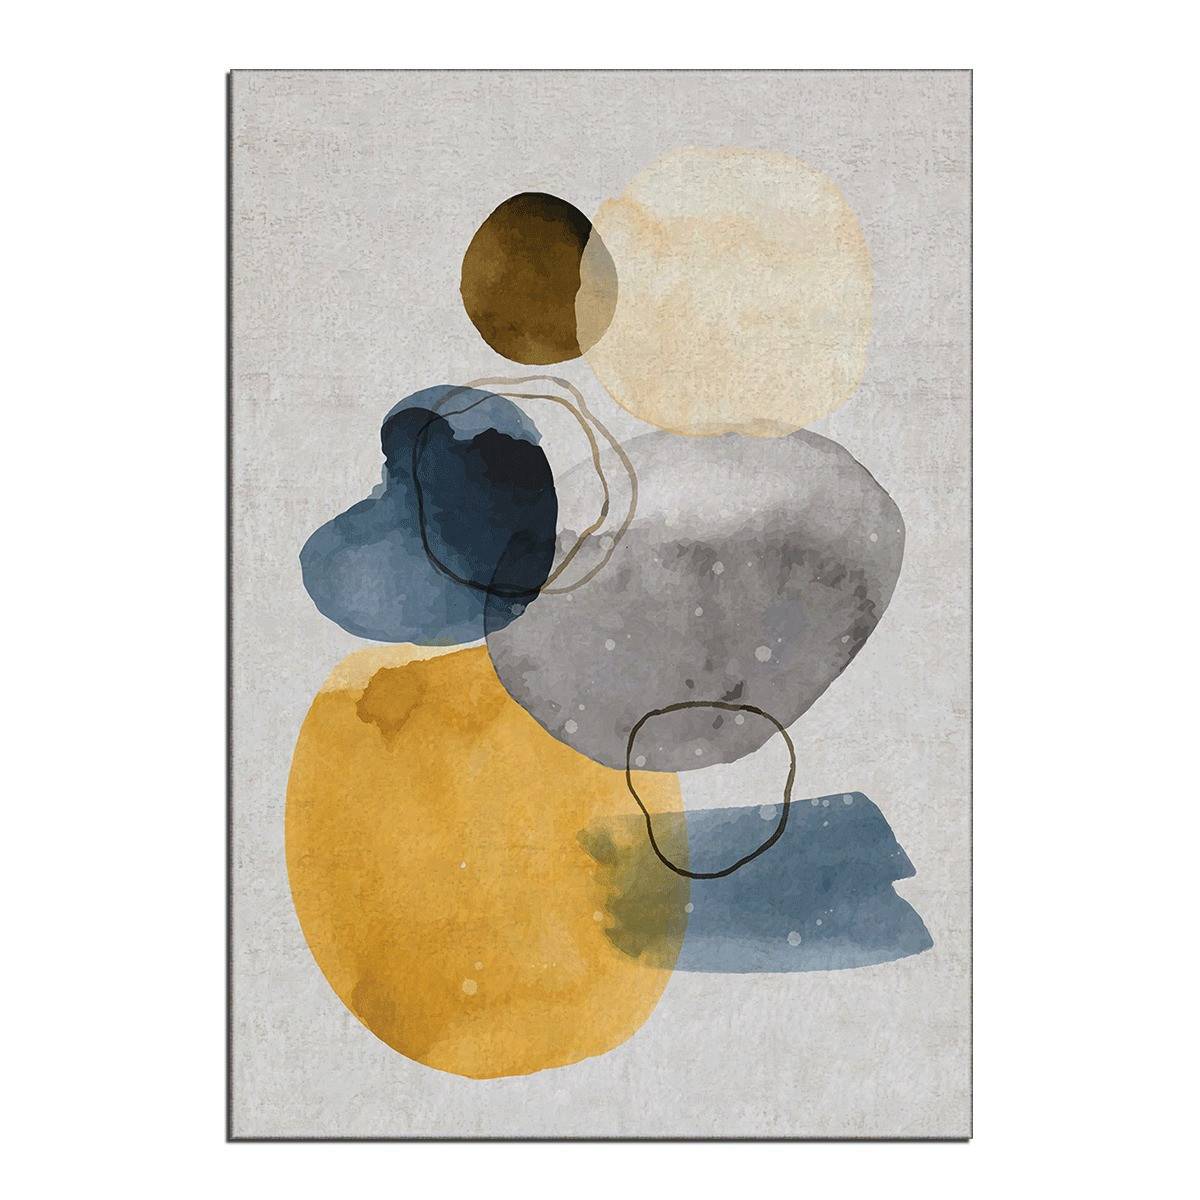 Eben Tapijt 100x140cm Abstract patroon grijs, blauw, bruin en geel